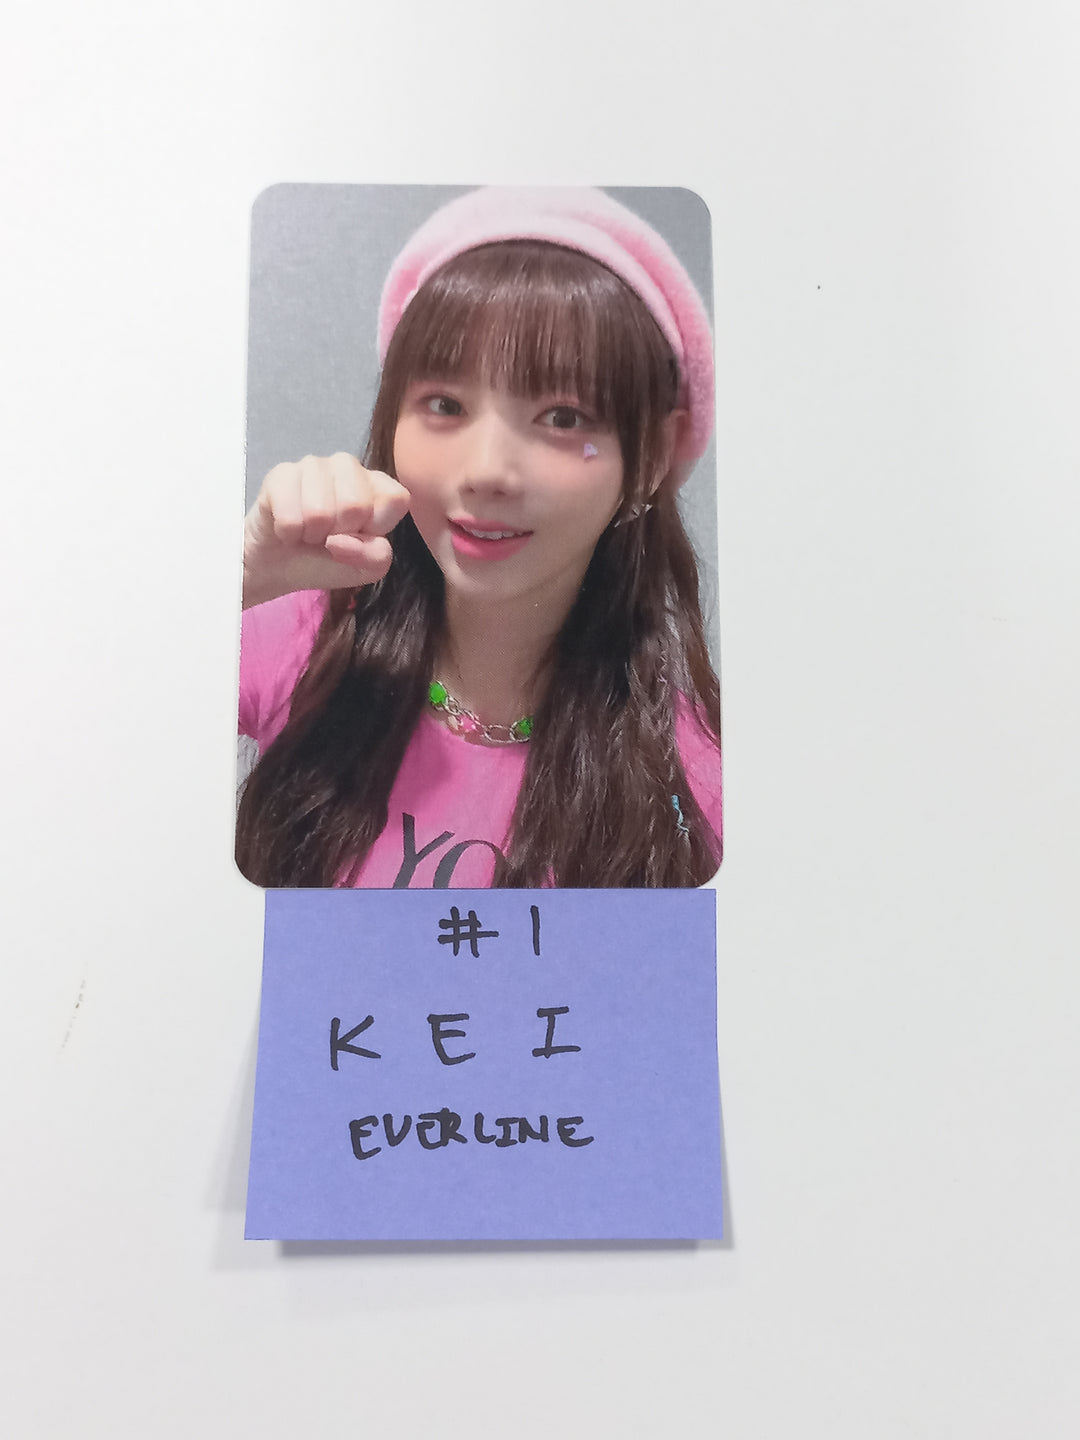 EL7Z U+P "7+UP" - Everline Fansign Event Photocard [23.10.11]